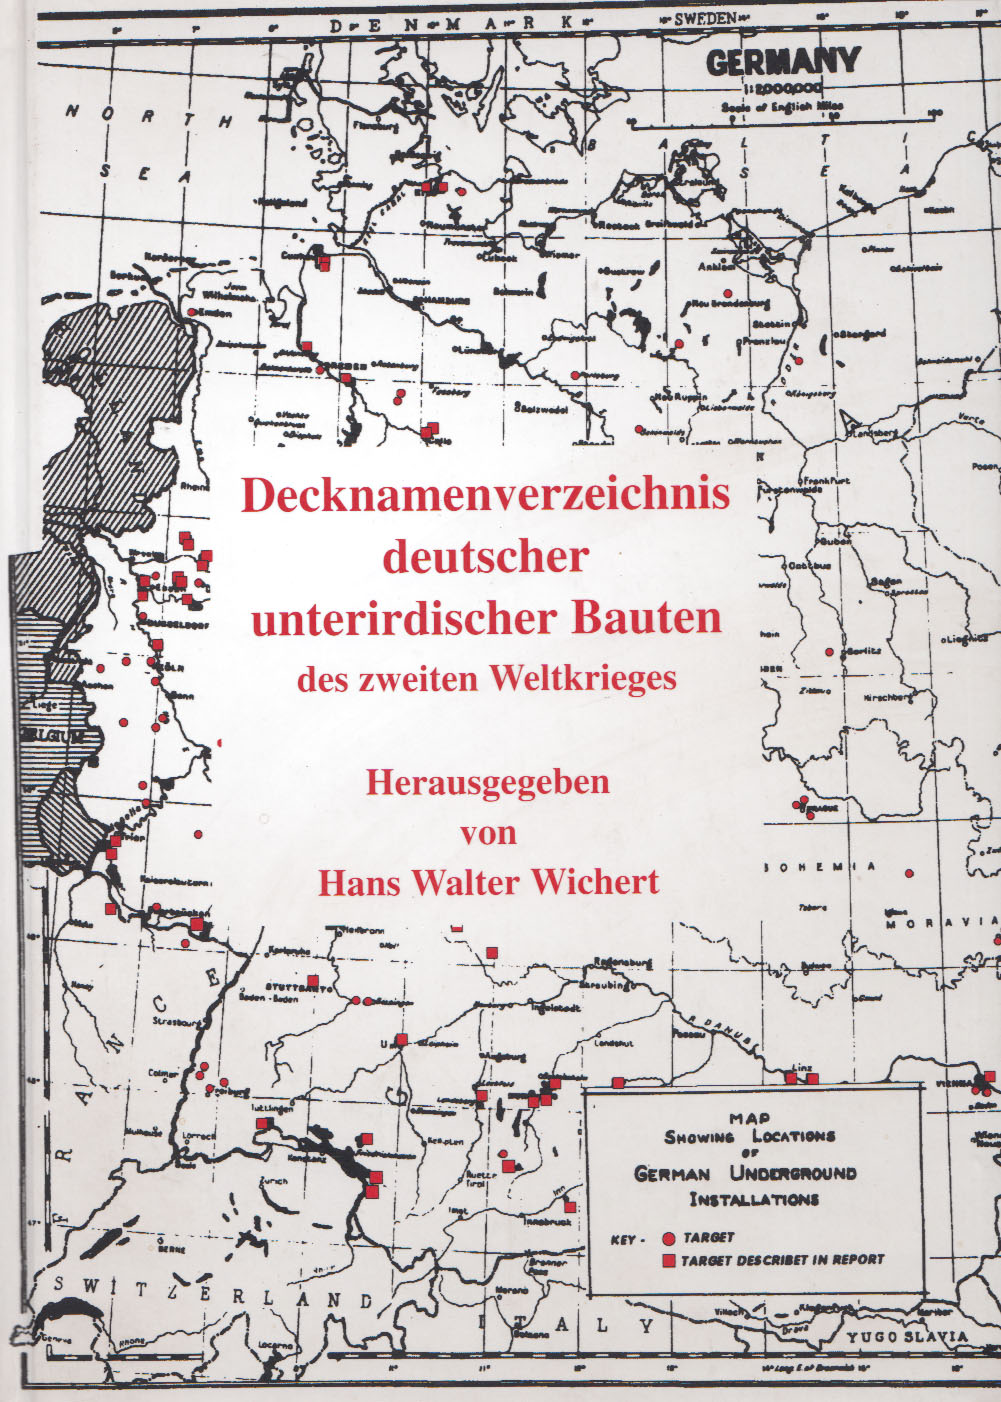 Decknamenverzeichnis deutscher unterirdischer Bauten